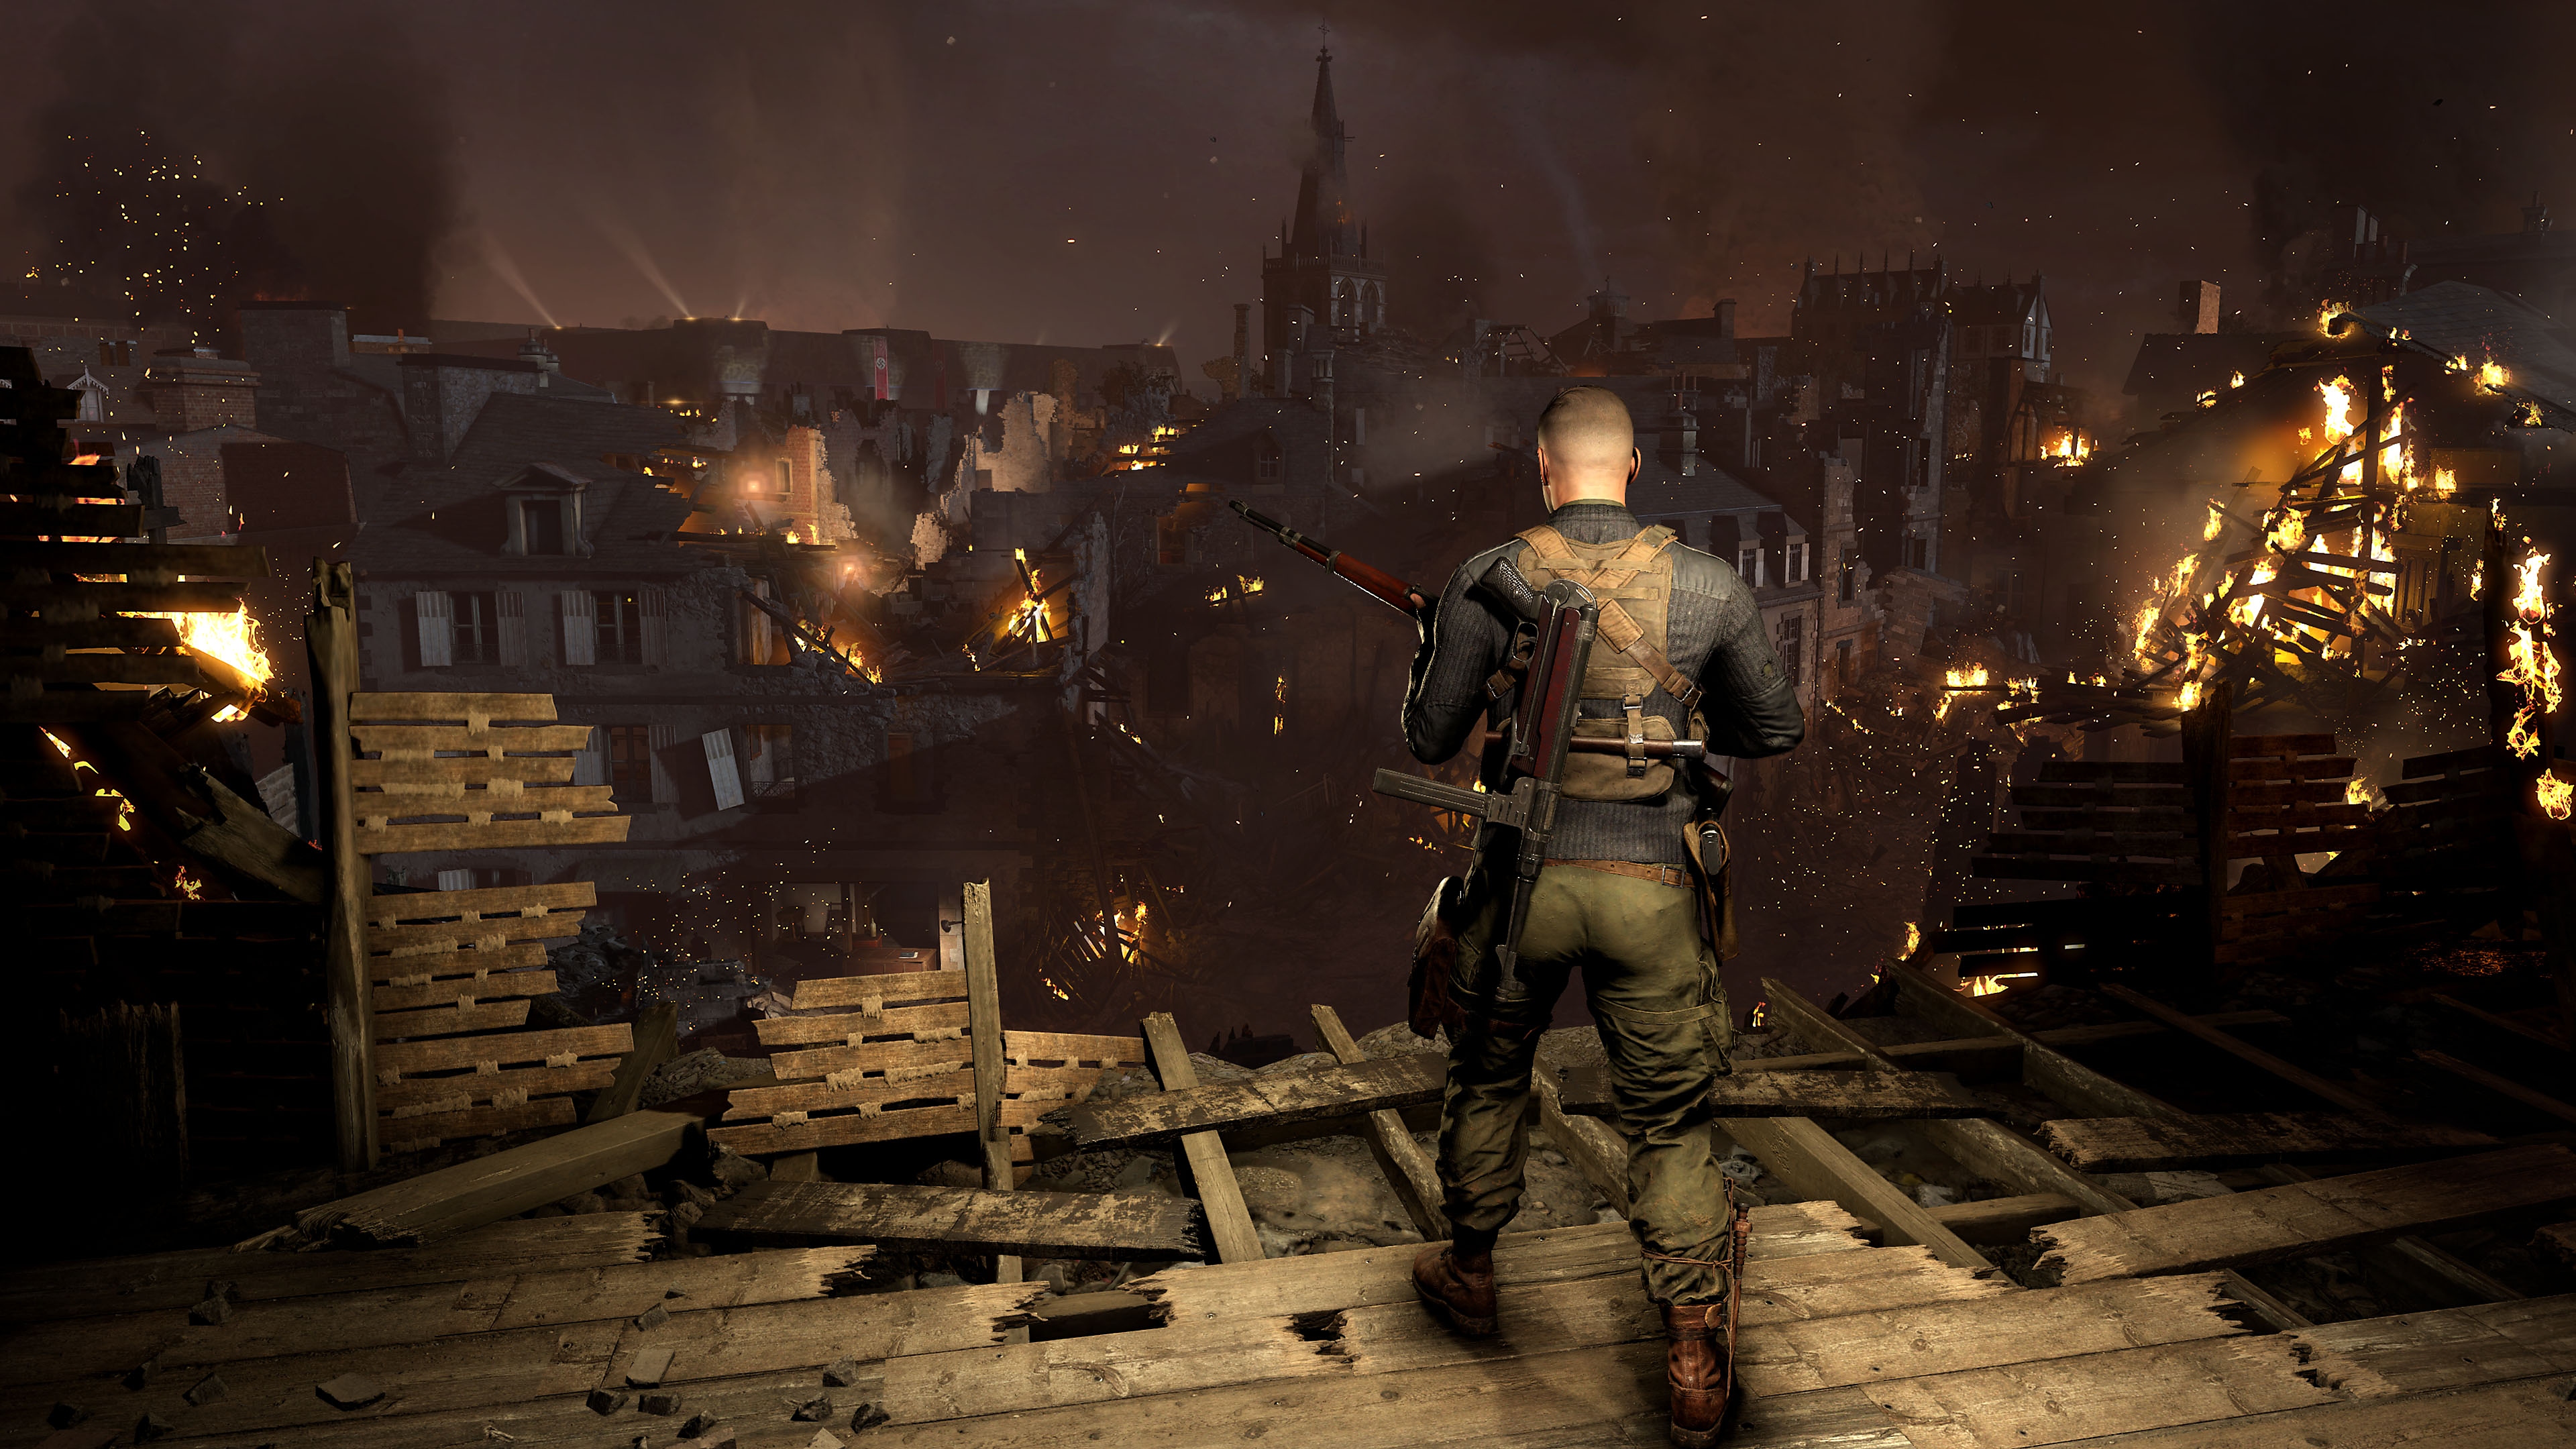 Captura de pantalla de Sniper Elite 5 que muestra a un personaje mirando desde lo alto una ciudad con edificios en llamas